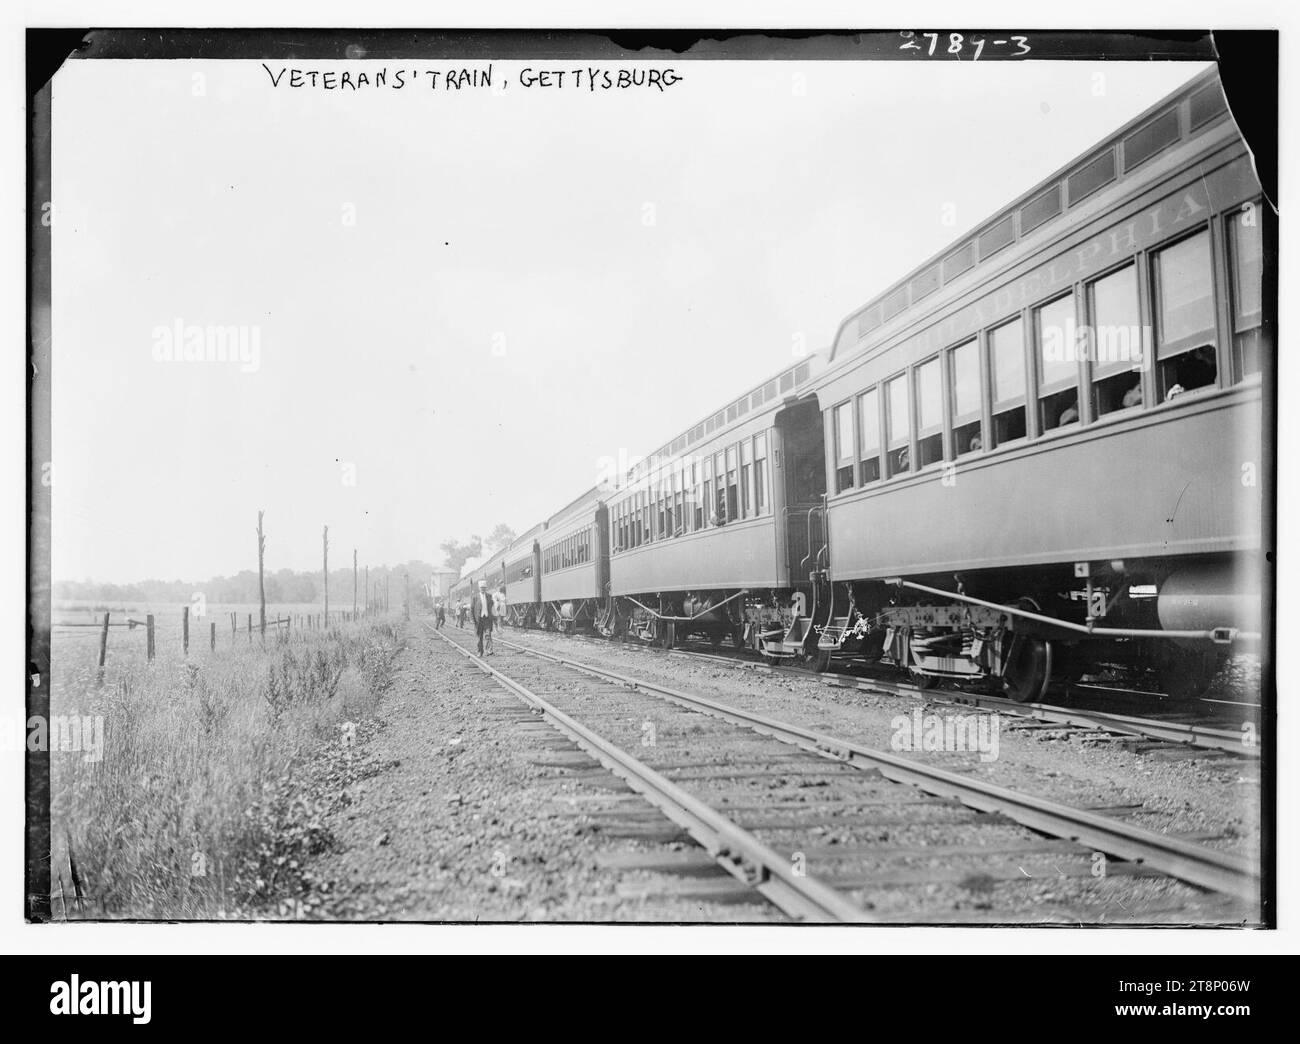 Veterans' Train, Gettysburg Stock Photo